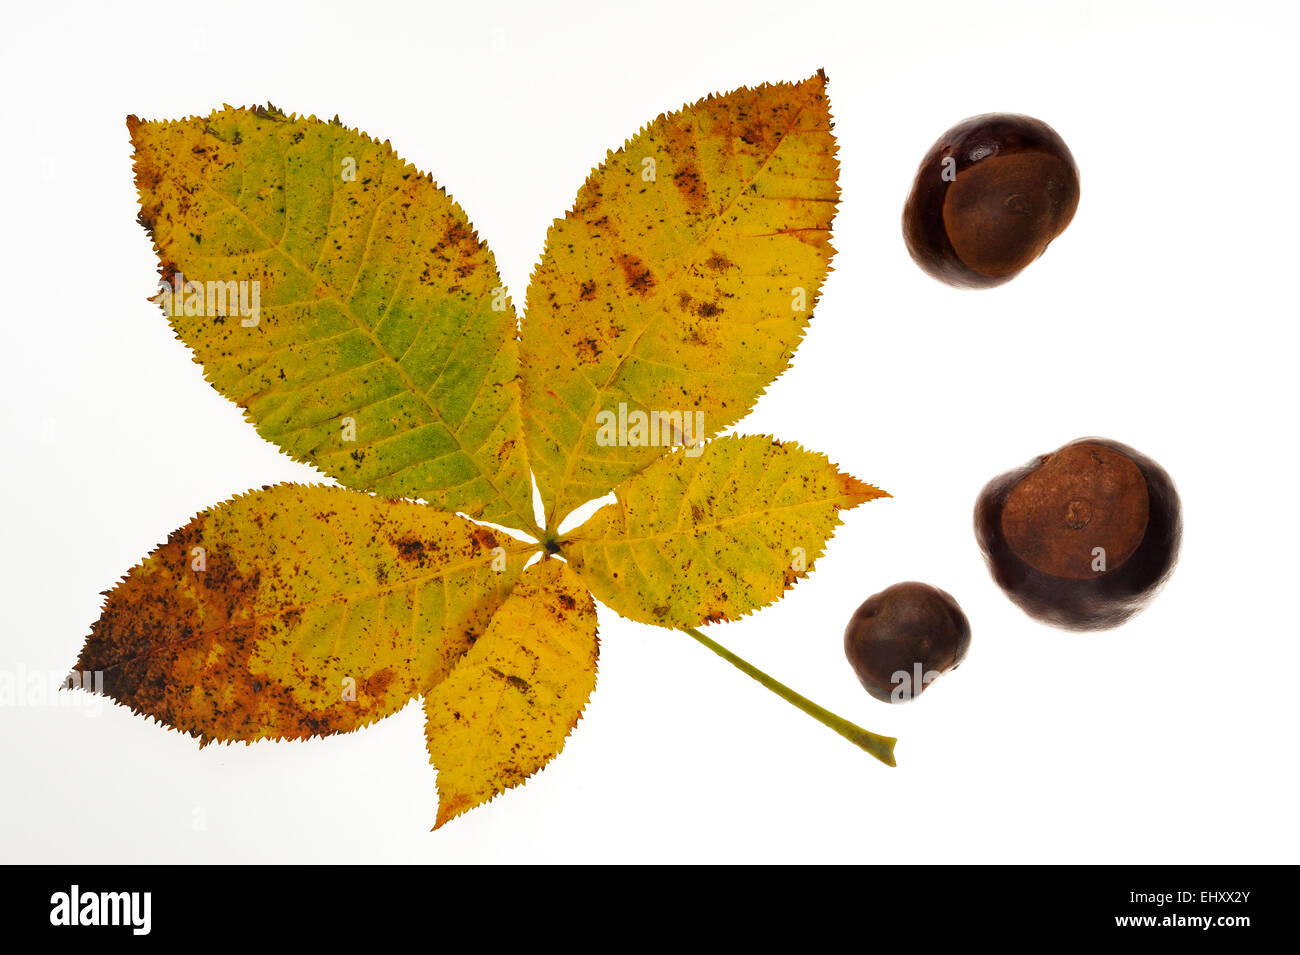 / Marronnier (Aesculus hippocastanum arbre conker conkers) et les feuilles en couleurs de l'automne contre fond blanc Banque D'Images